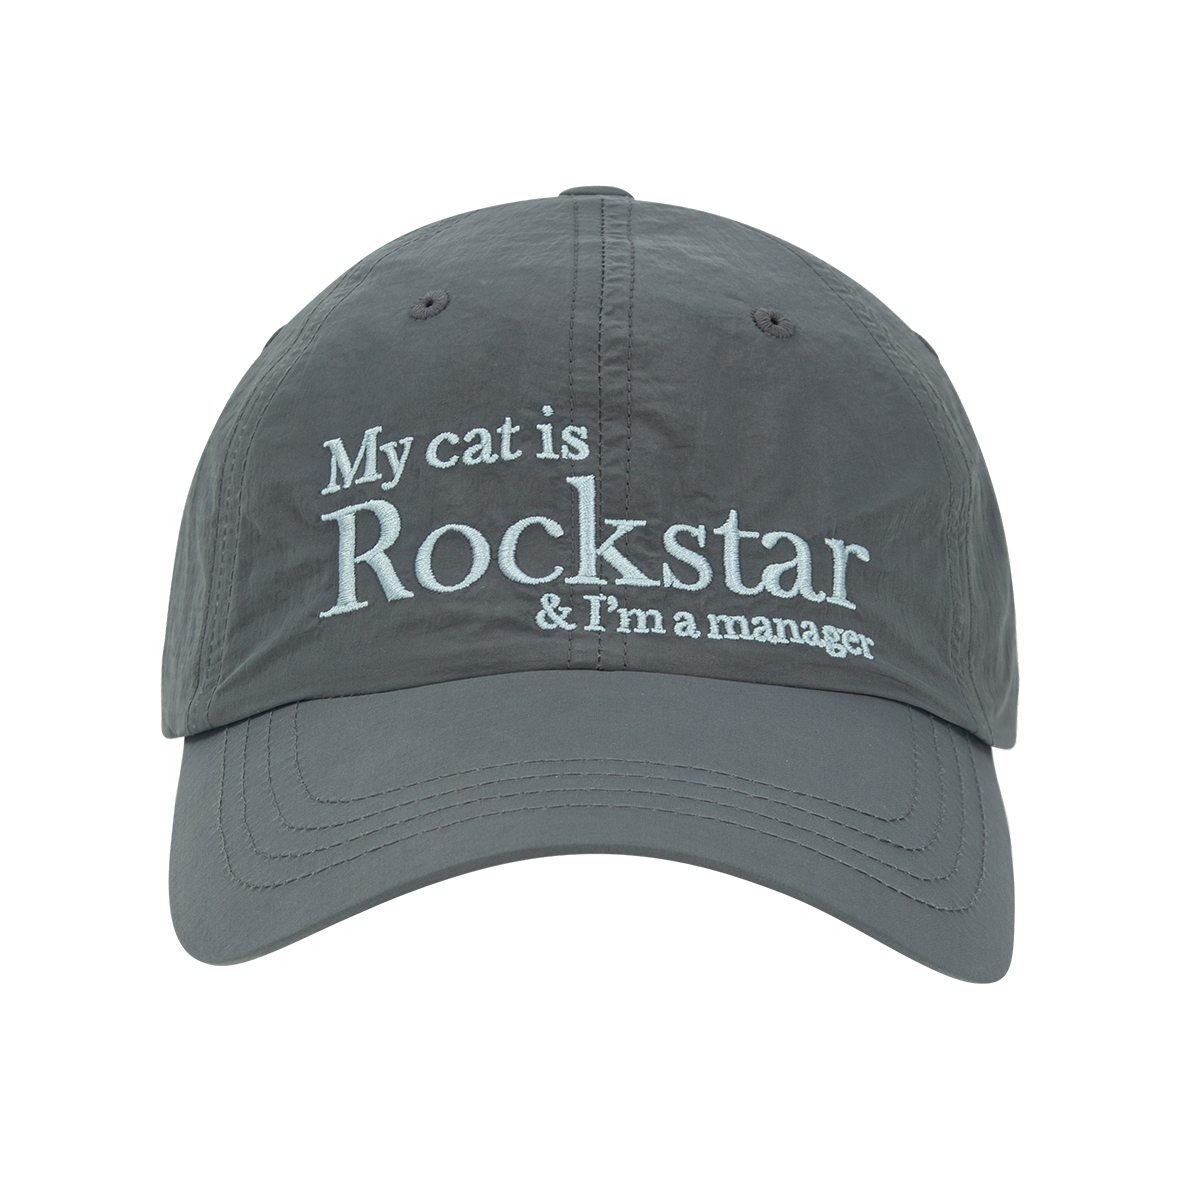 Rockstar cat cap (Charcoal)